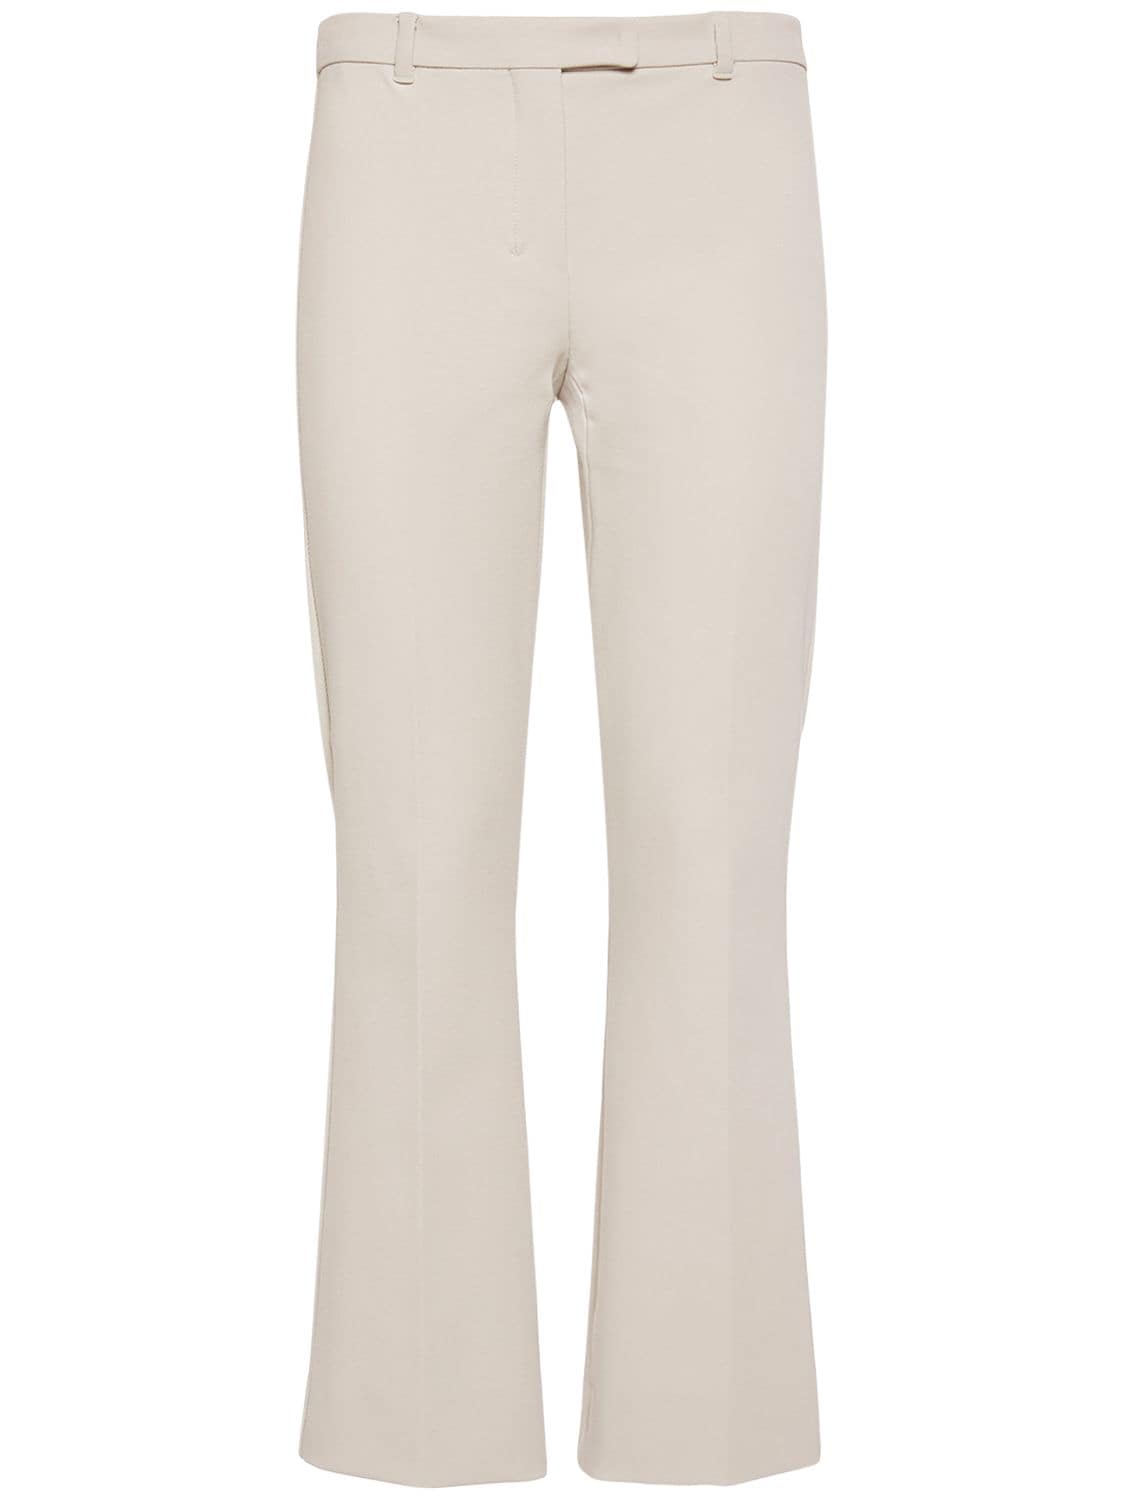 's Max Mara Umanita Classic Cotton Blend Pants In Ecru